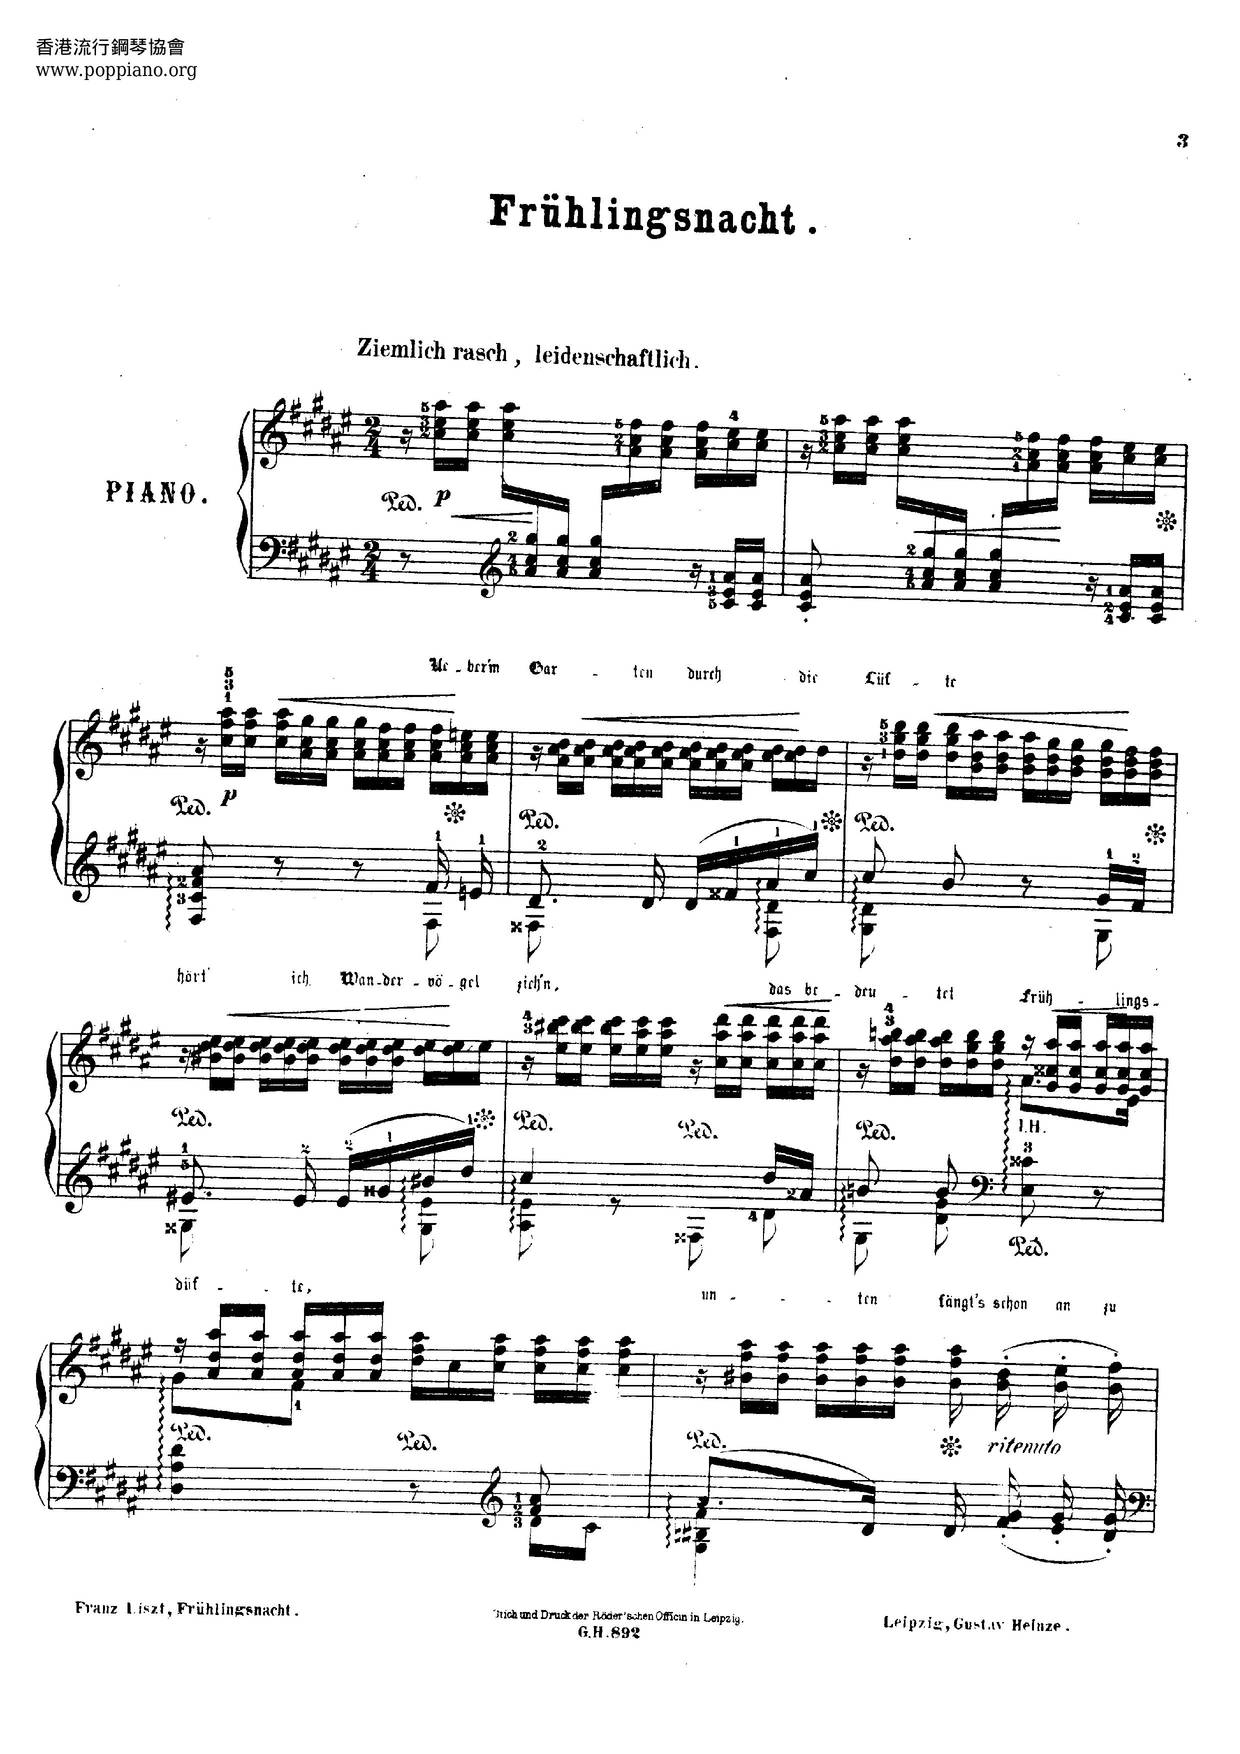 Frühlingsnacht, Lied Von Schumann, S.568ピアノ譜